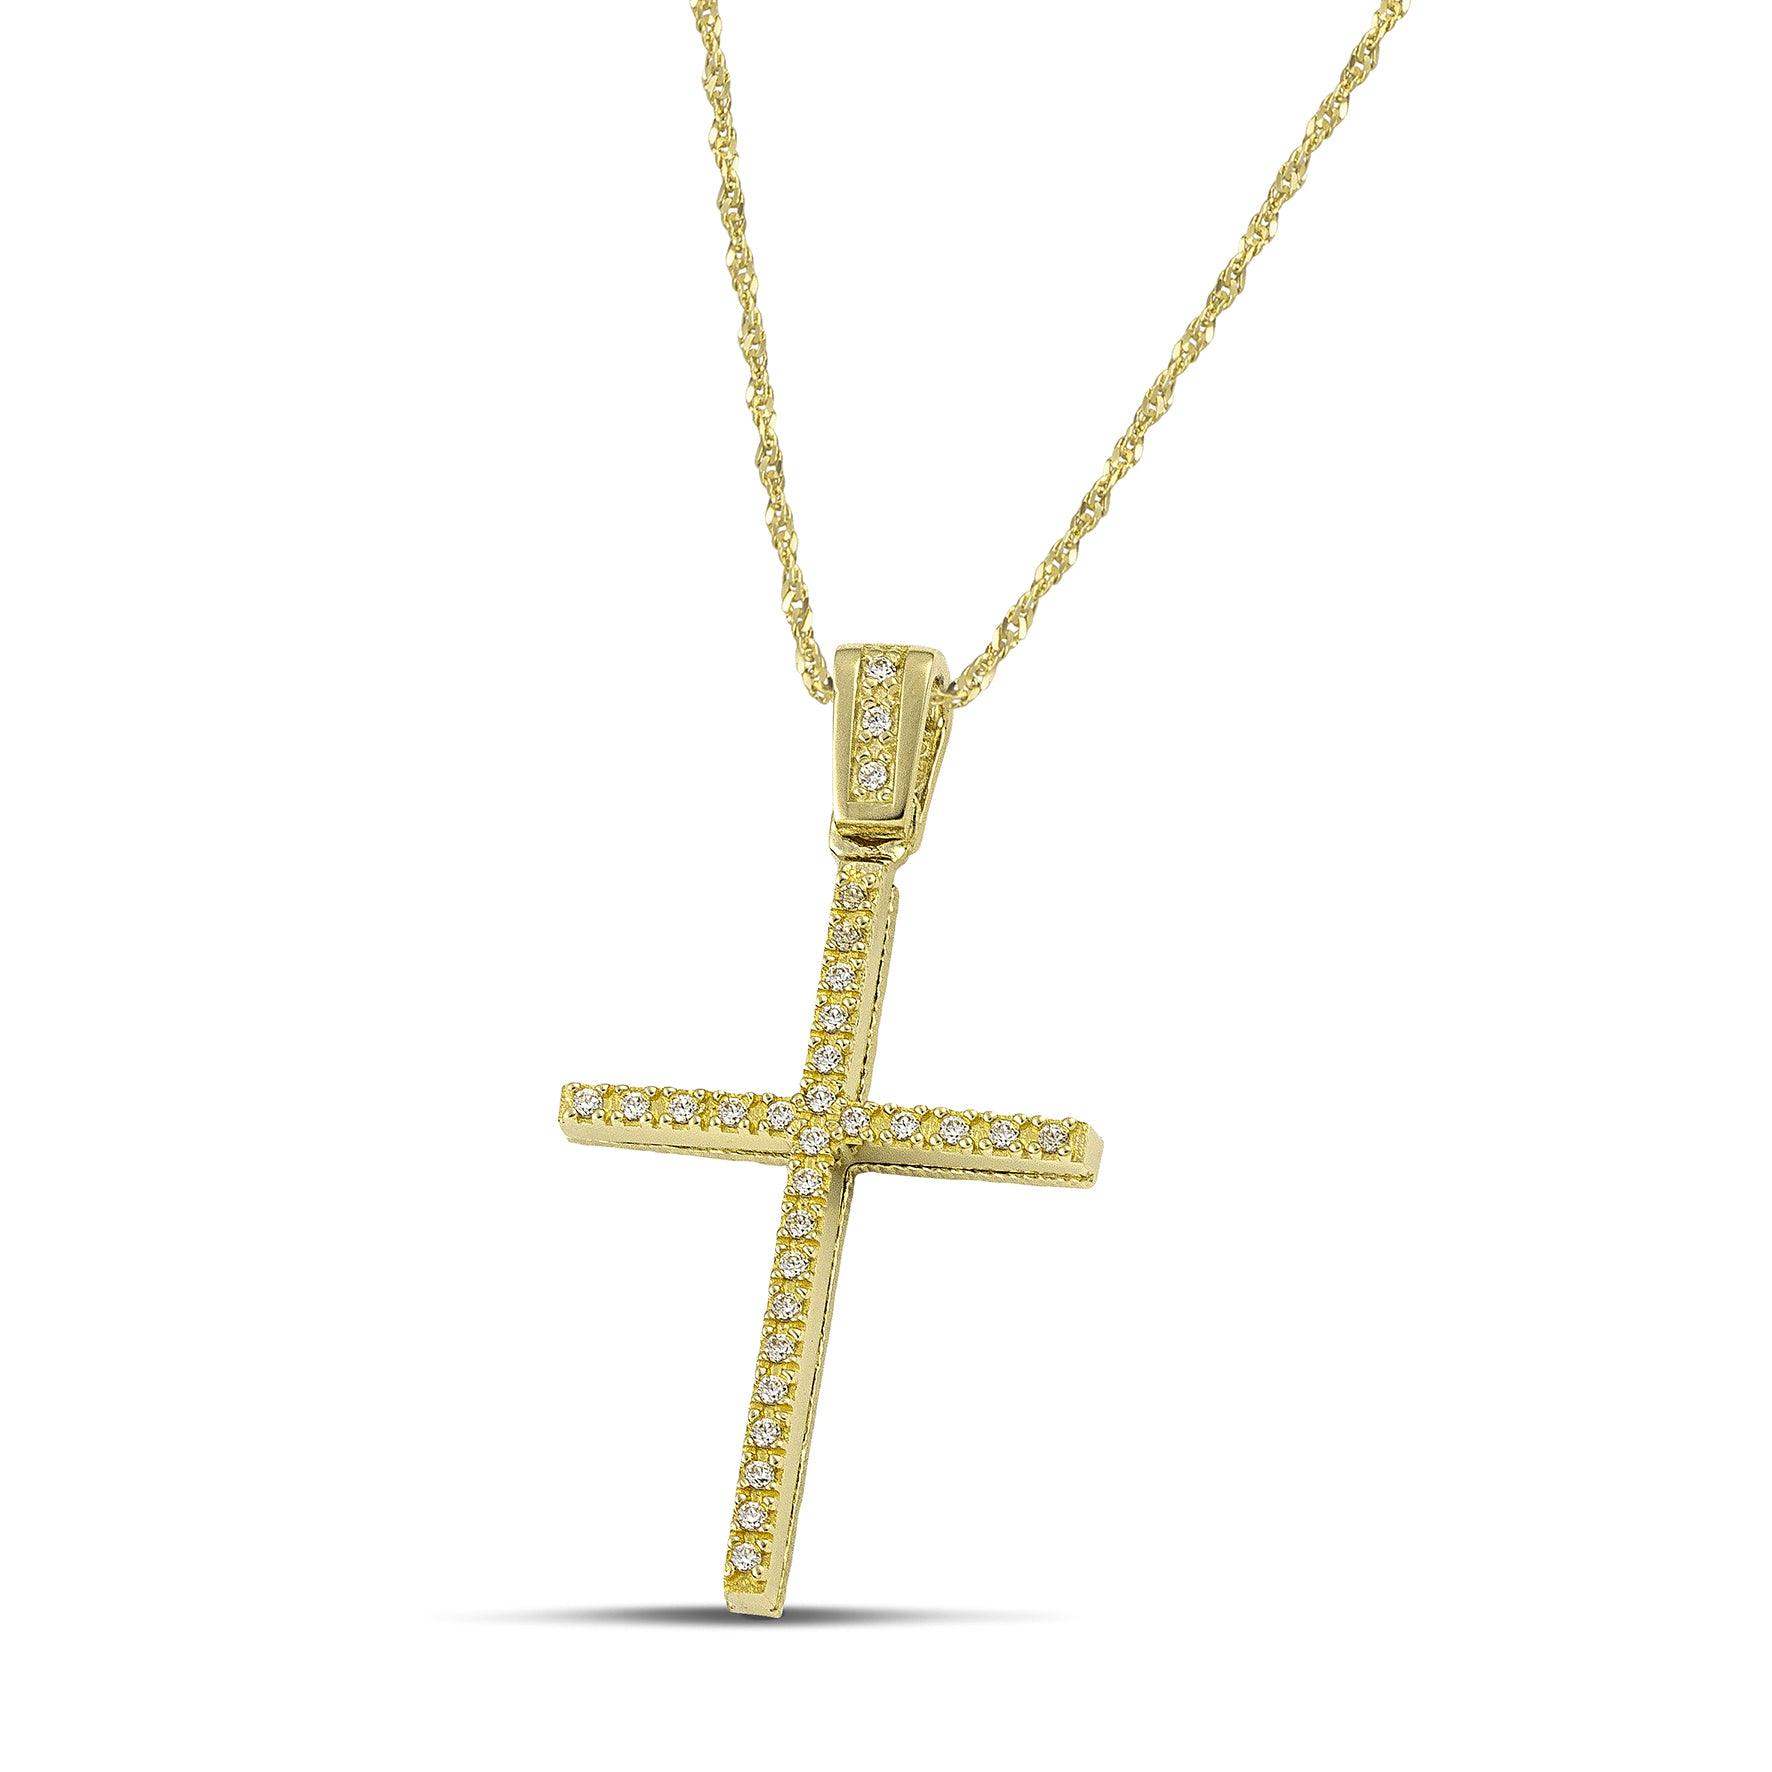 Γυναικείος χρυσός σταυρός για βάπτιση με ζιργκόν, με στριφτή χρυσή αλυσίδα.